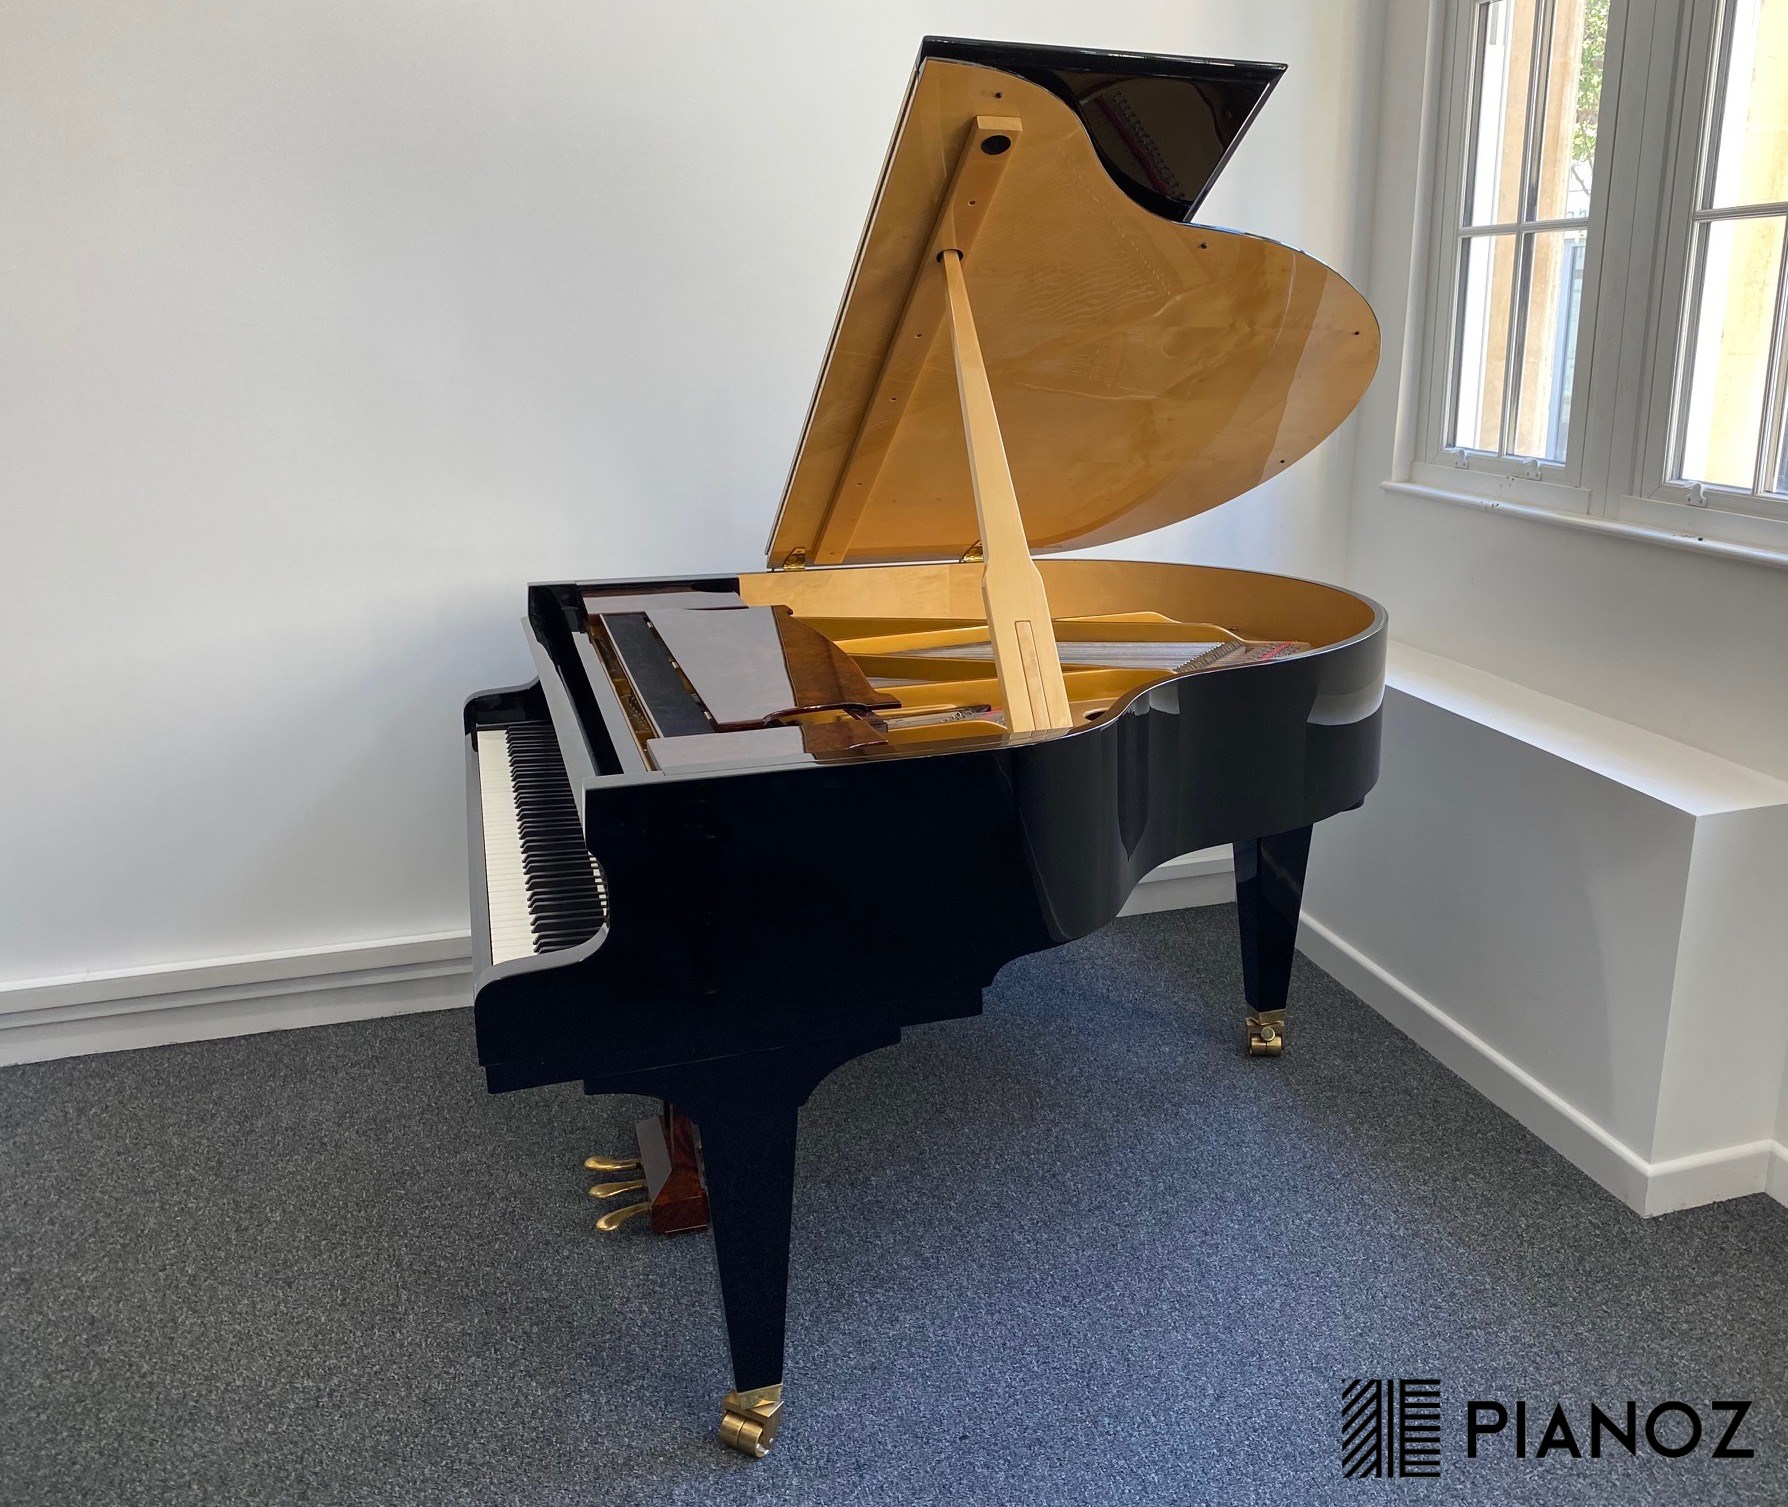 Steingraeber Phoenix 170 Carbon Fibre Soundboard Baby Grand Piano piano for sale in UK